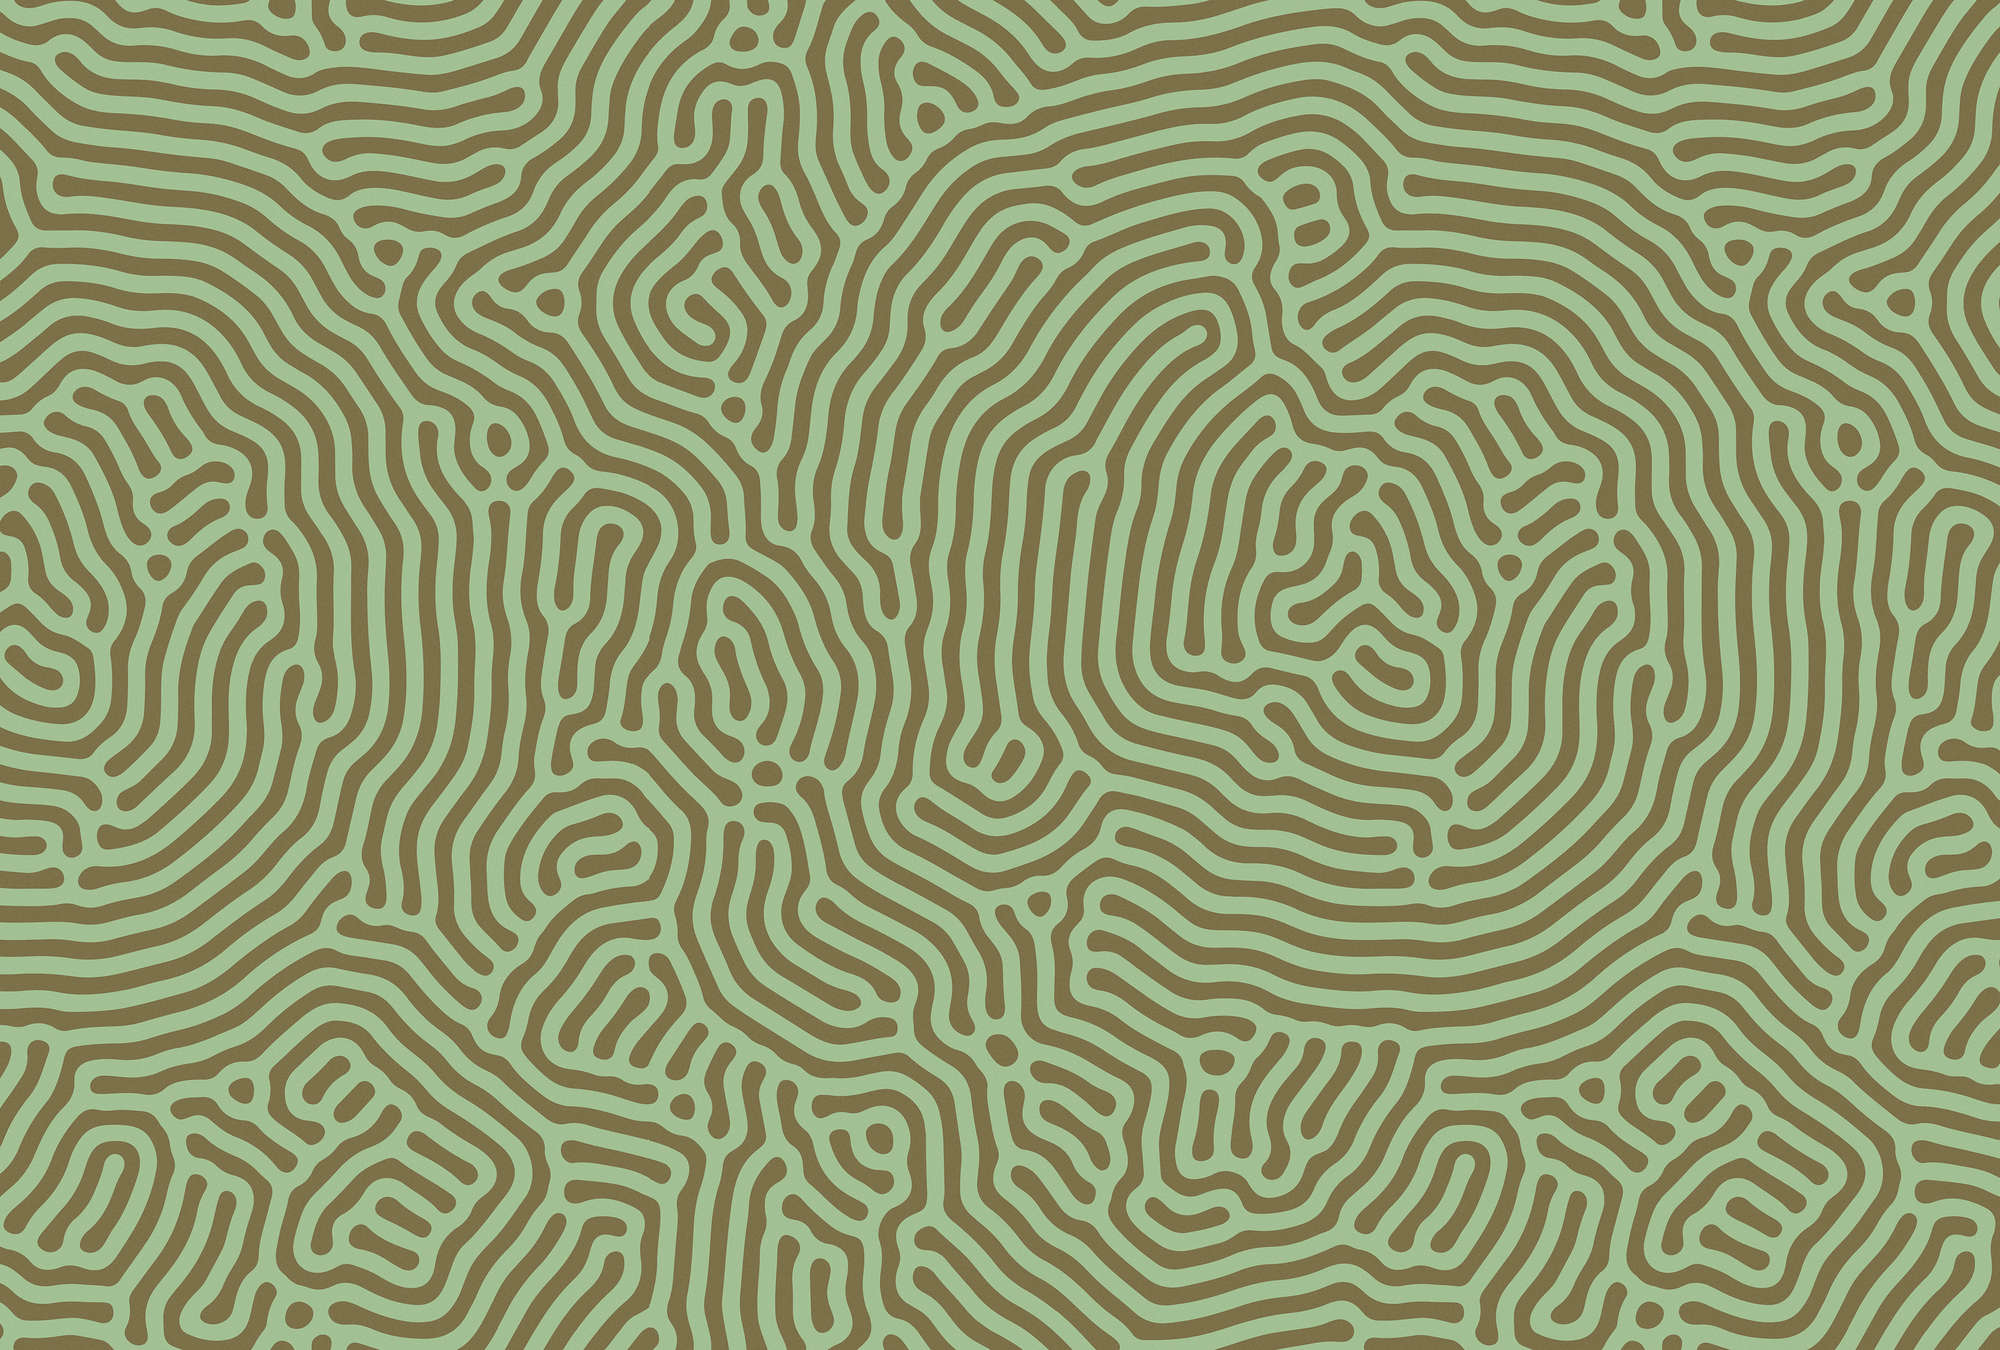             Sahel 1 – Grüne Fototapete Labyrinth Muster Salbeigrün
        